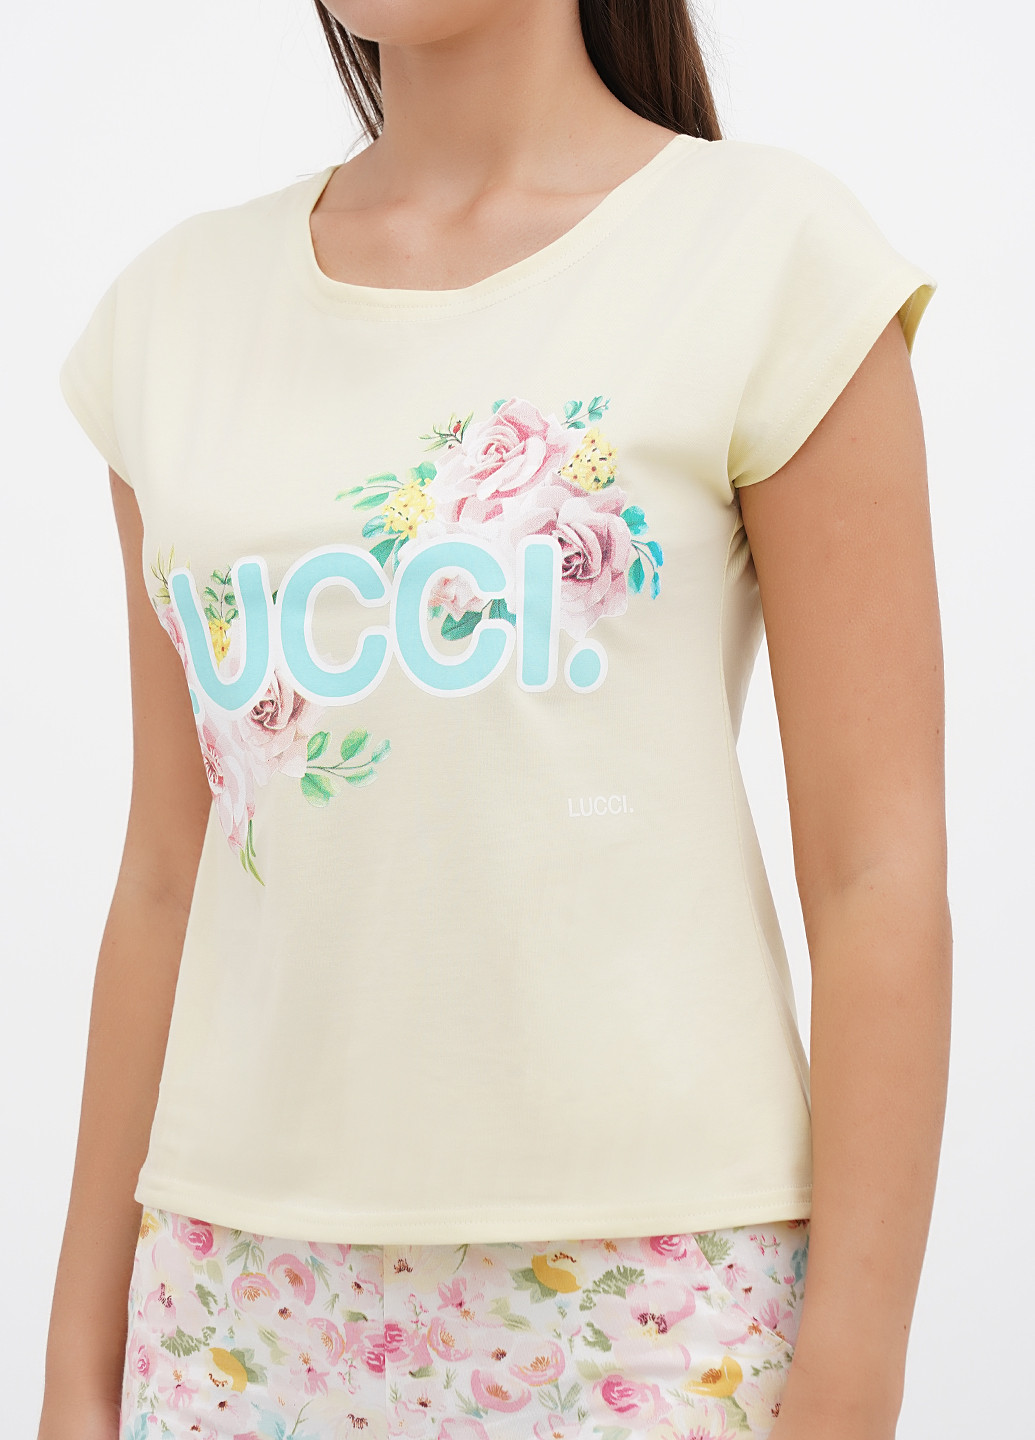 Светло-желтая всесезон пижама (футболка, шорты) футболка + шорты Lucci